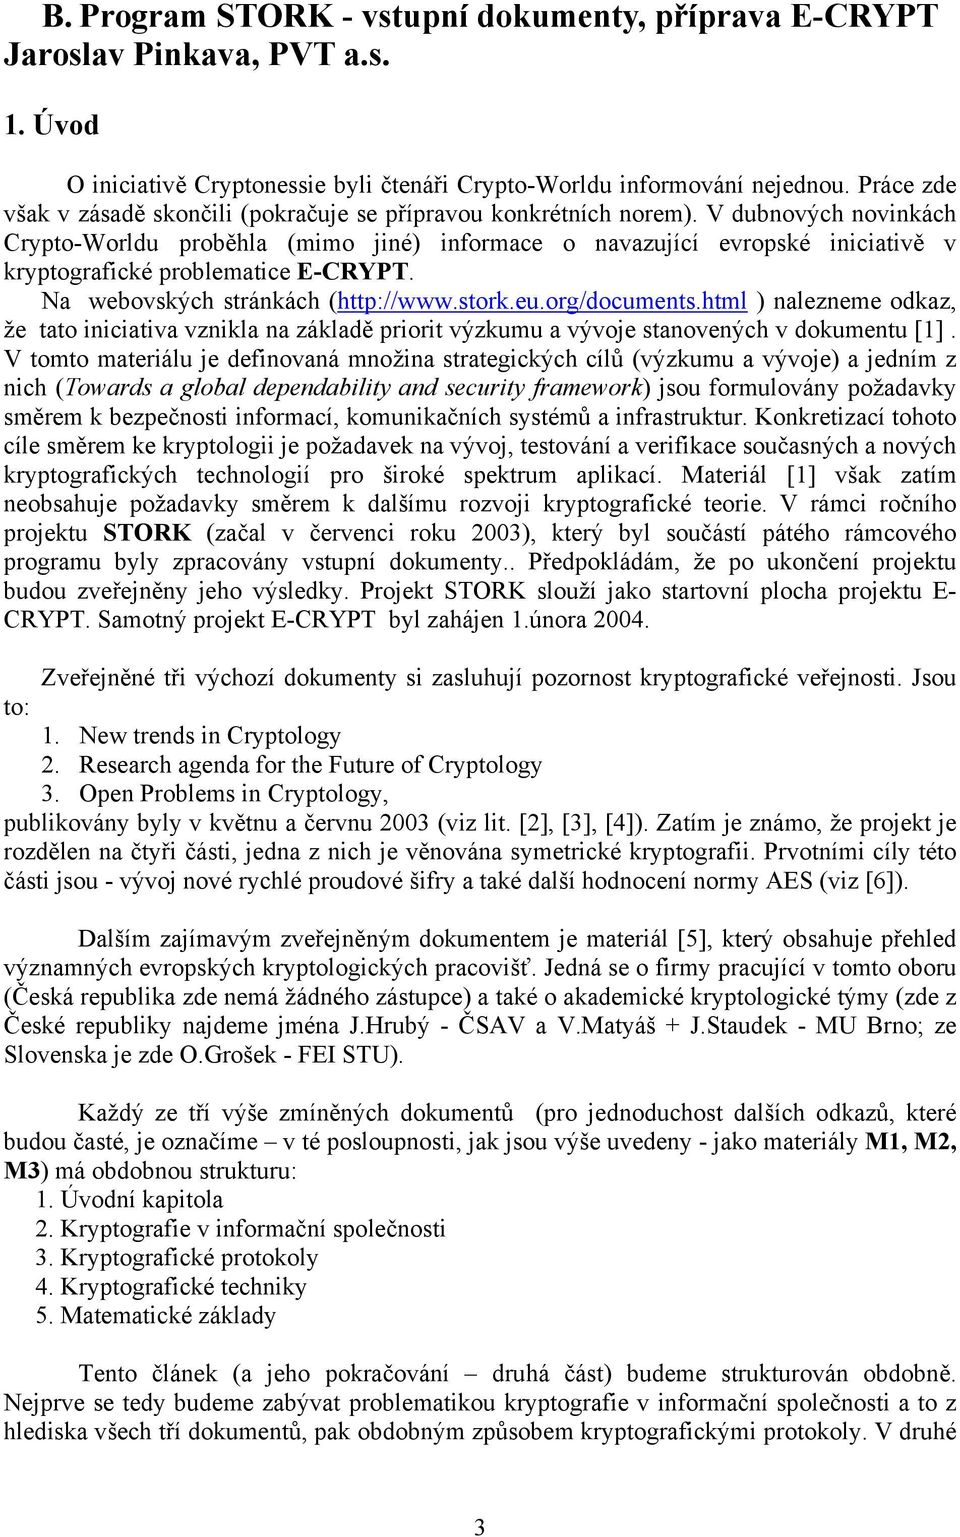 V dubnových novinkách Crypto-Worldu proběhla (mimo jiné) informace o navazující evropské iniciativě v kryptografické problematice E-CRYPT. Na webovských stránkách (http://www.stork.eu.org/documents.